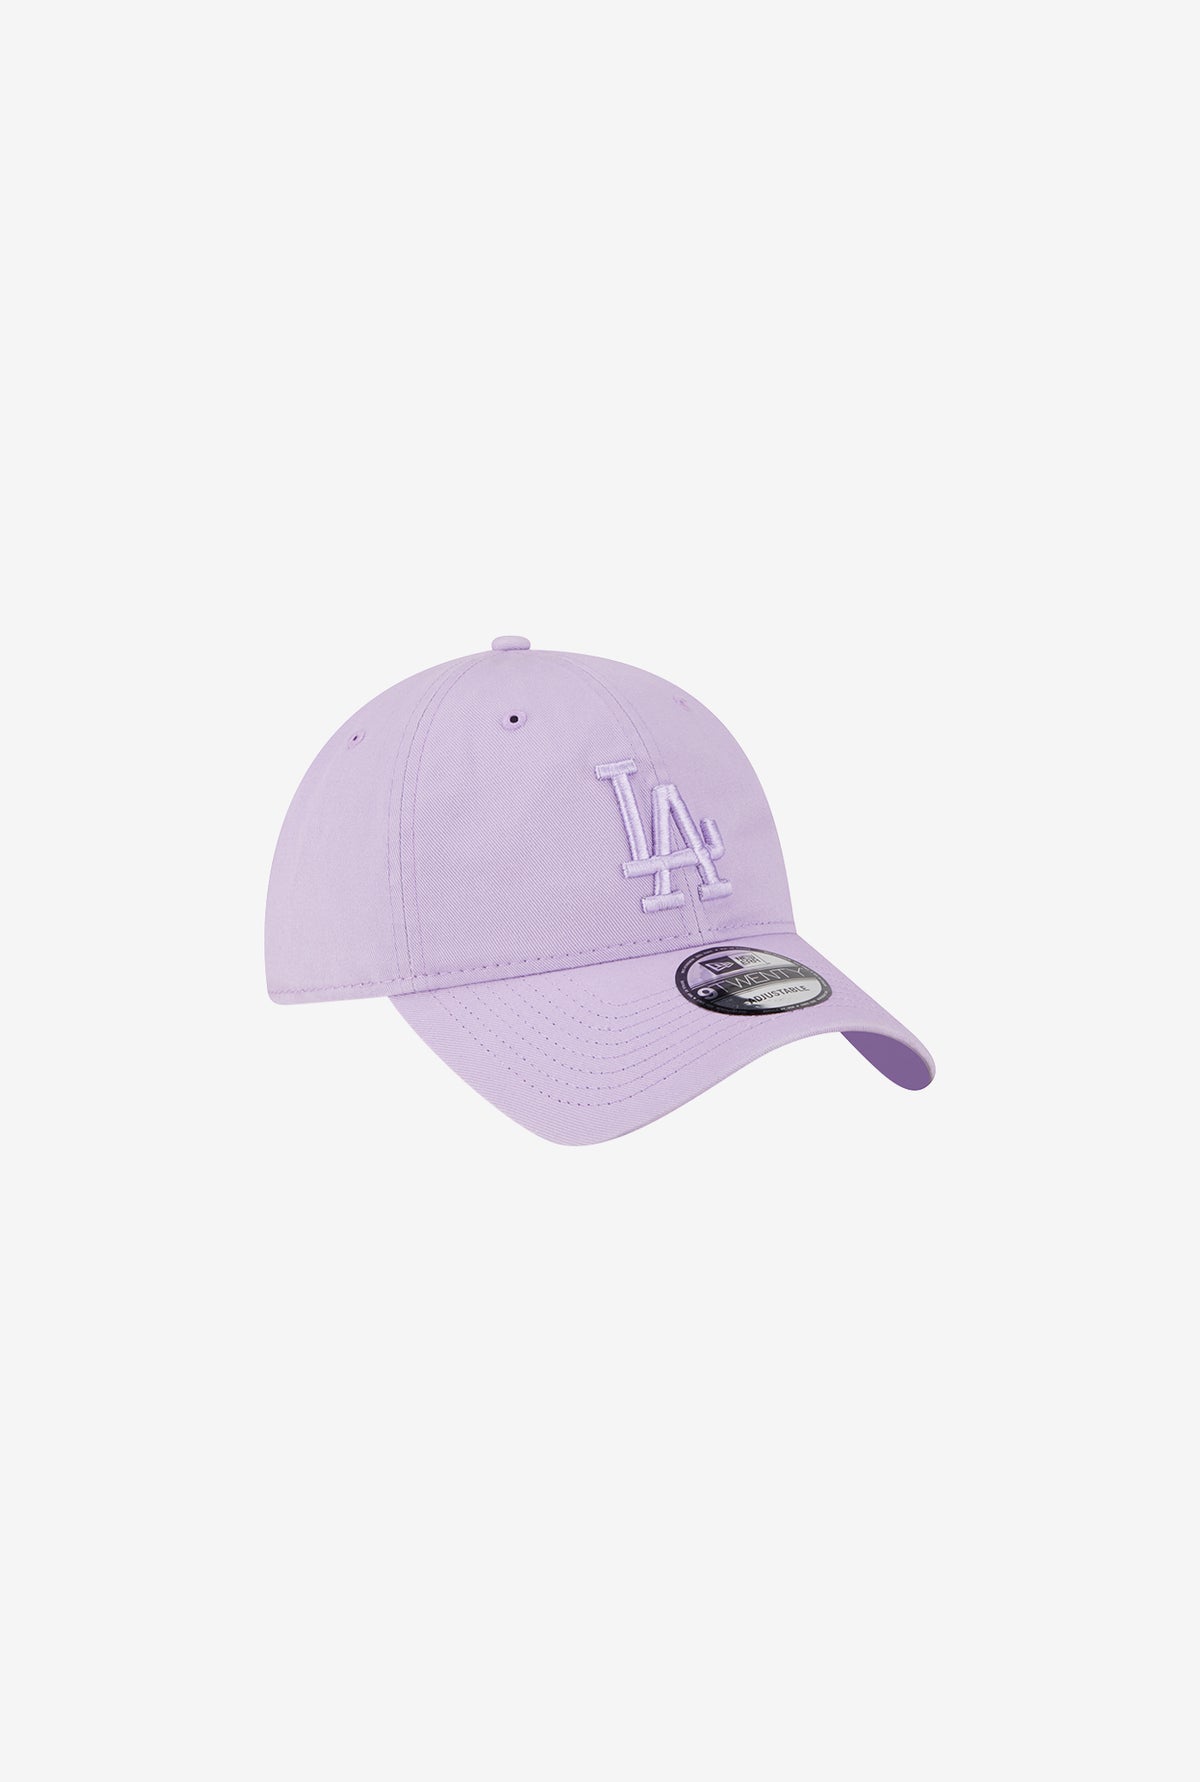 Los Angeles Dodgers 9TWENTY Color Pack - Lavender